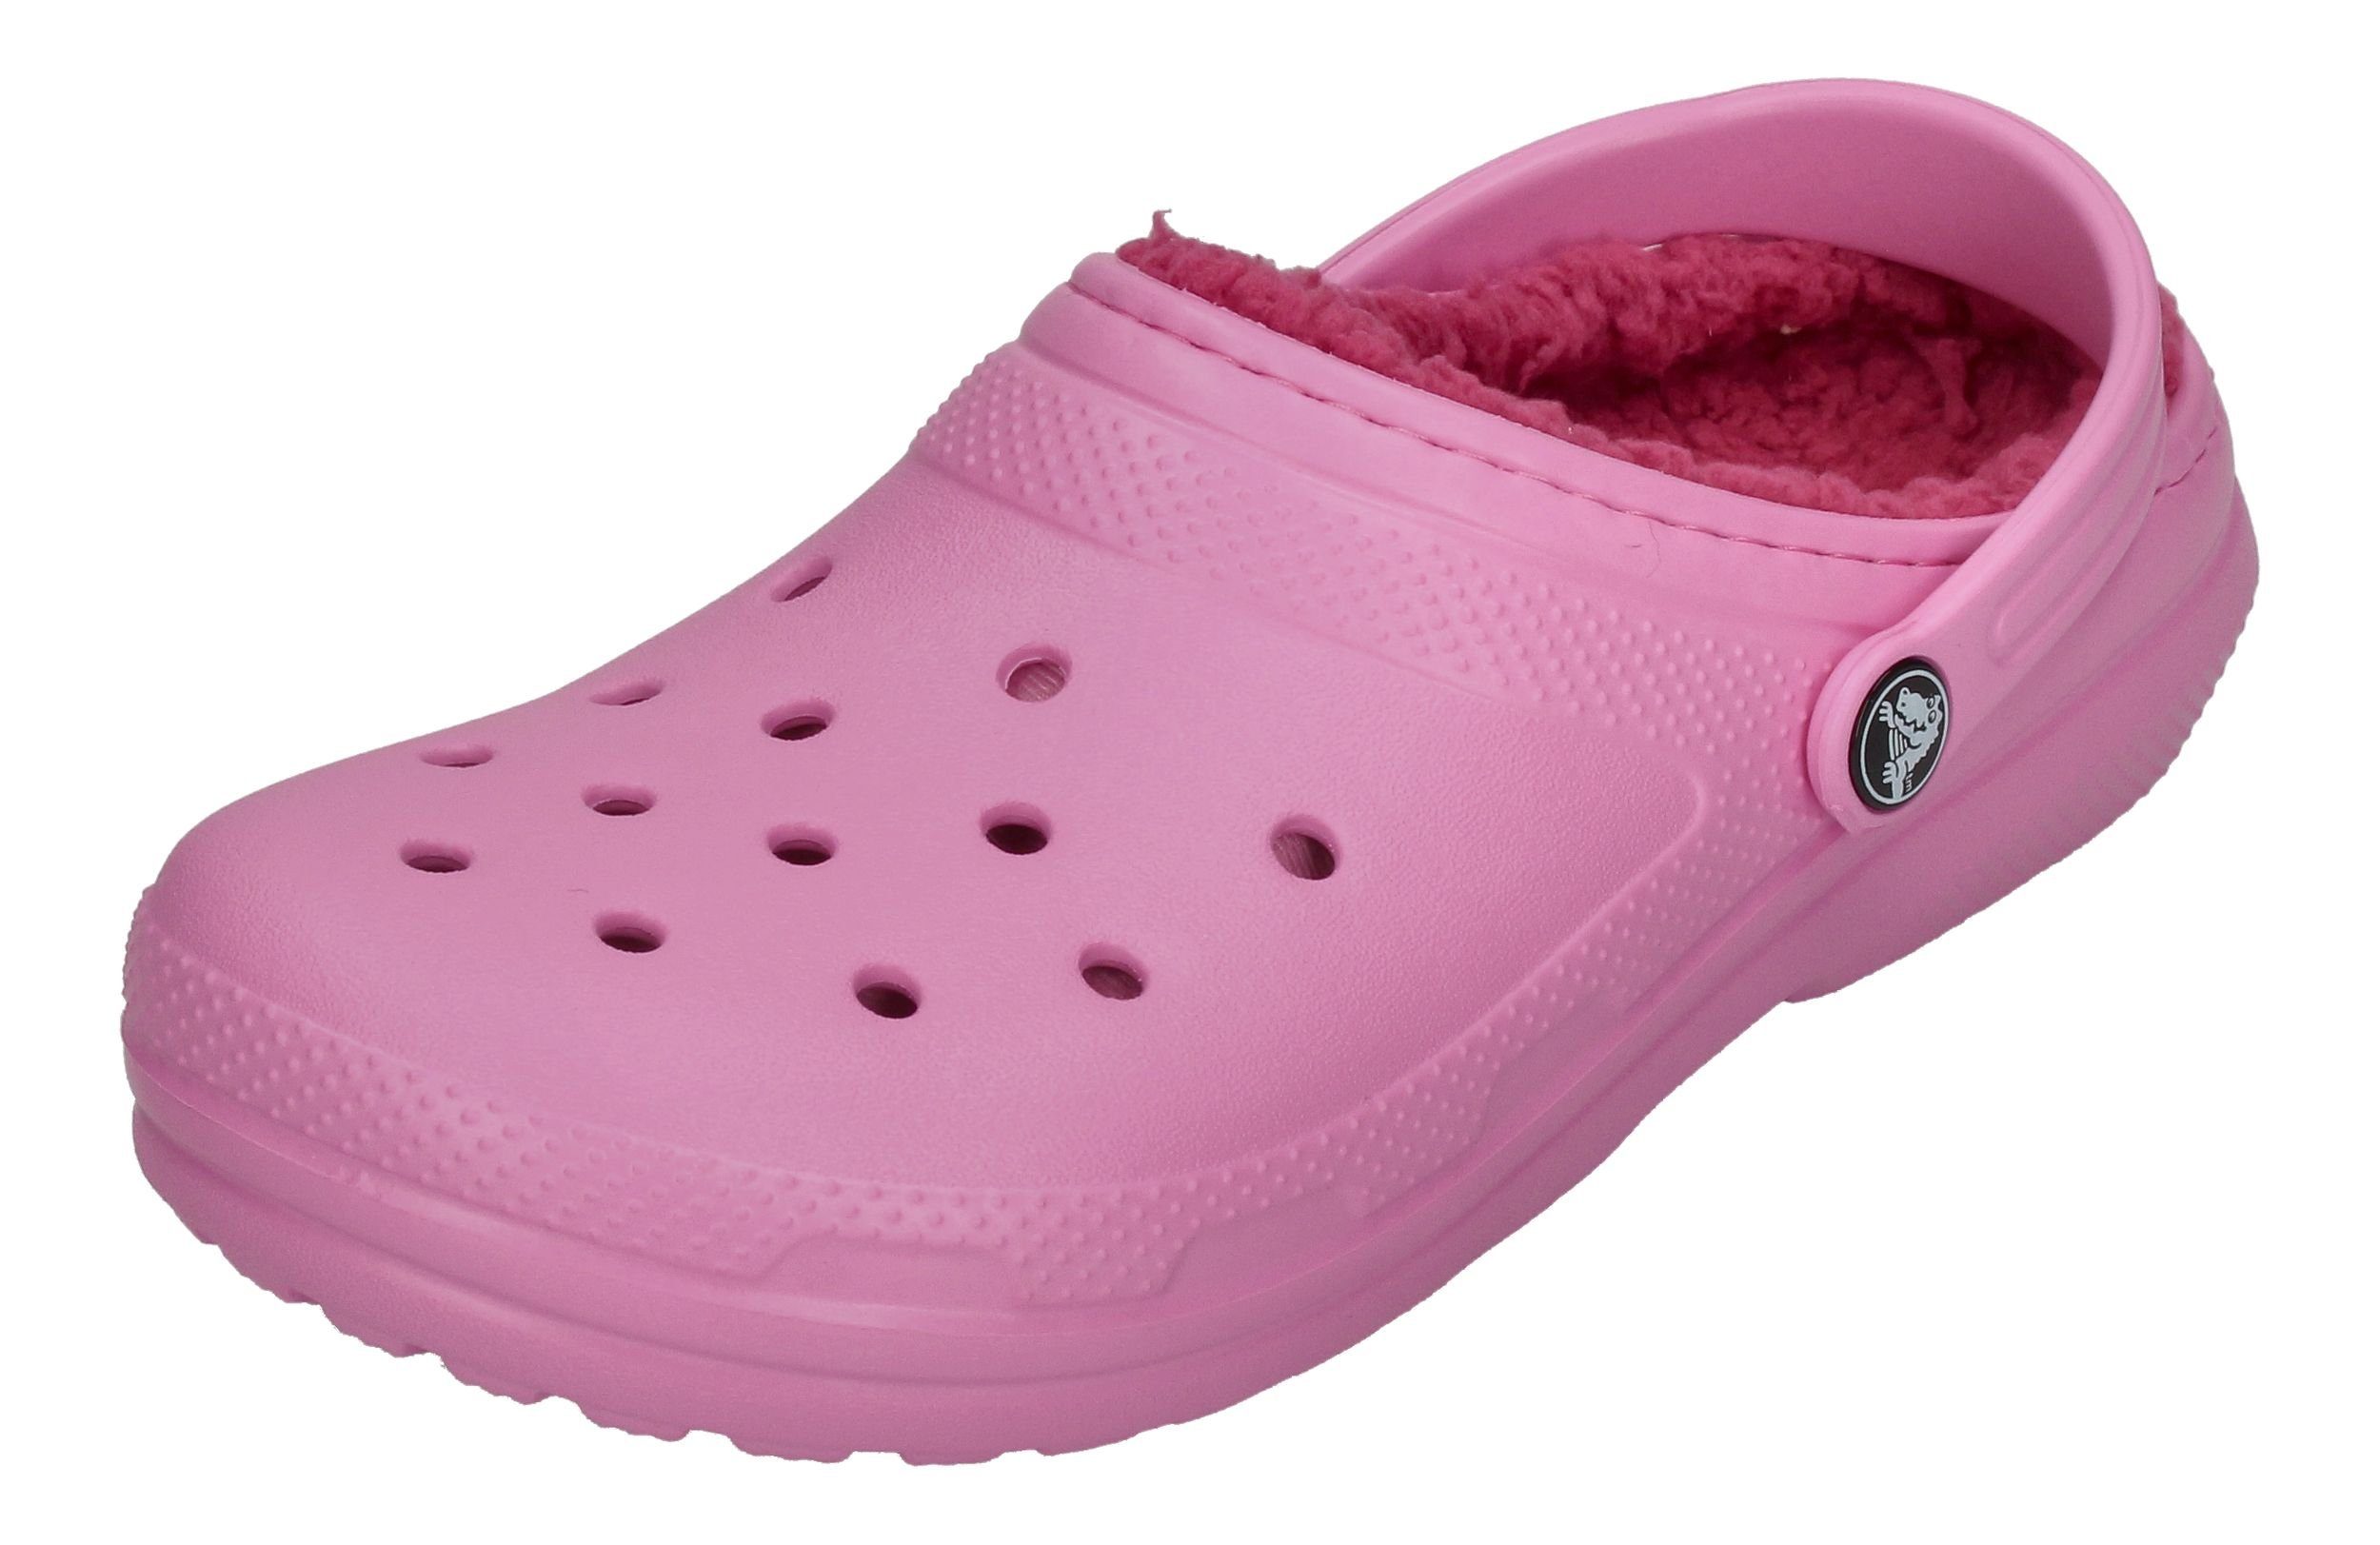 Crocs Classic Lined Clog Hausschuh Taffy Pink unbekannt